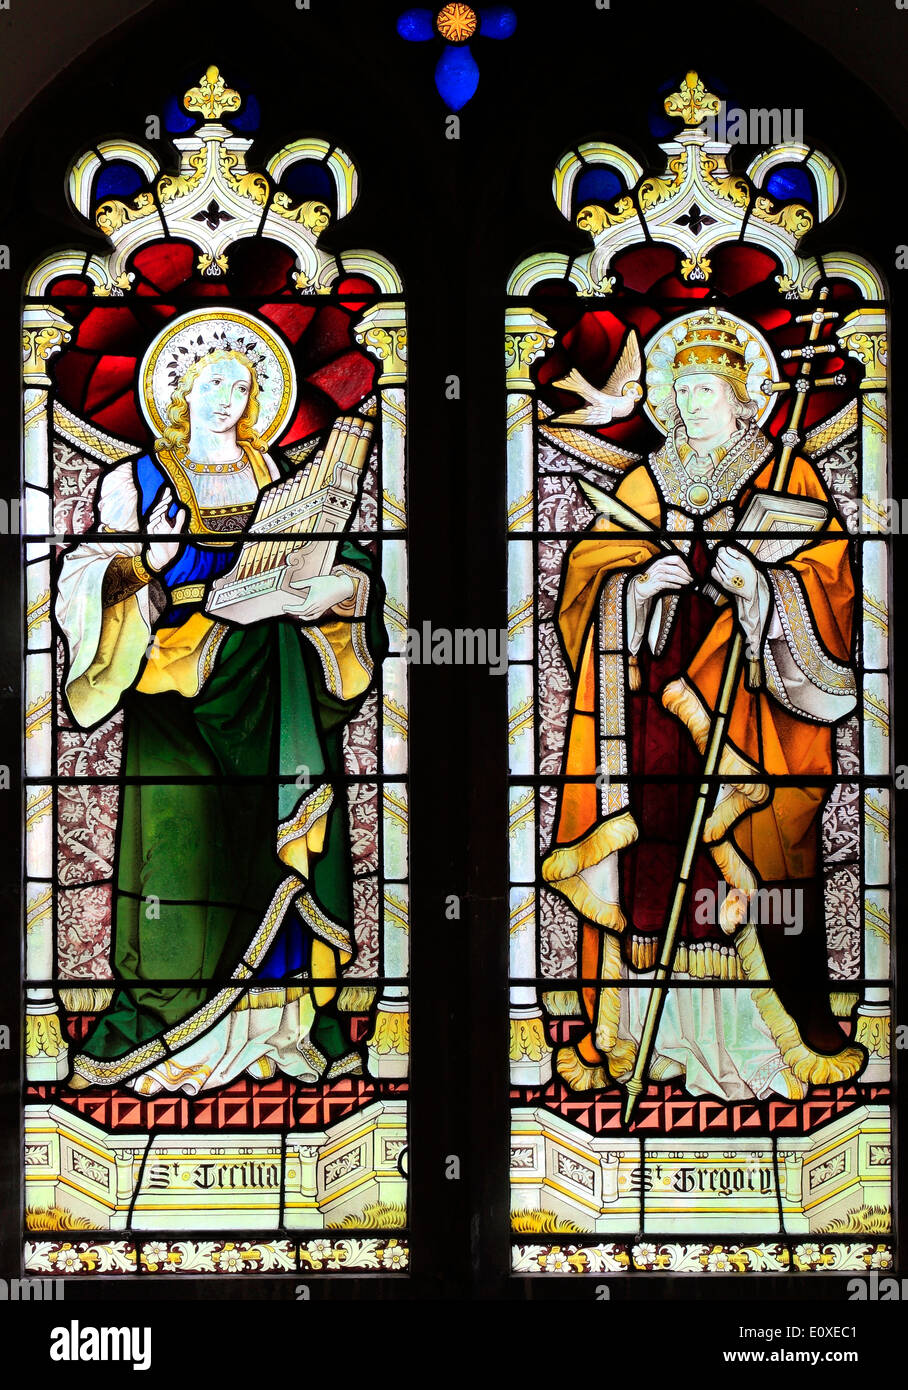 Sainte Cécile et le pape Saint Grégoire, vitrail par Heaton, Butler & Bayne, ch. 1890 West Newton, Norfolk, Angleterre, Royaume-Uni Banque D'Images